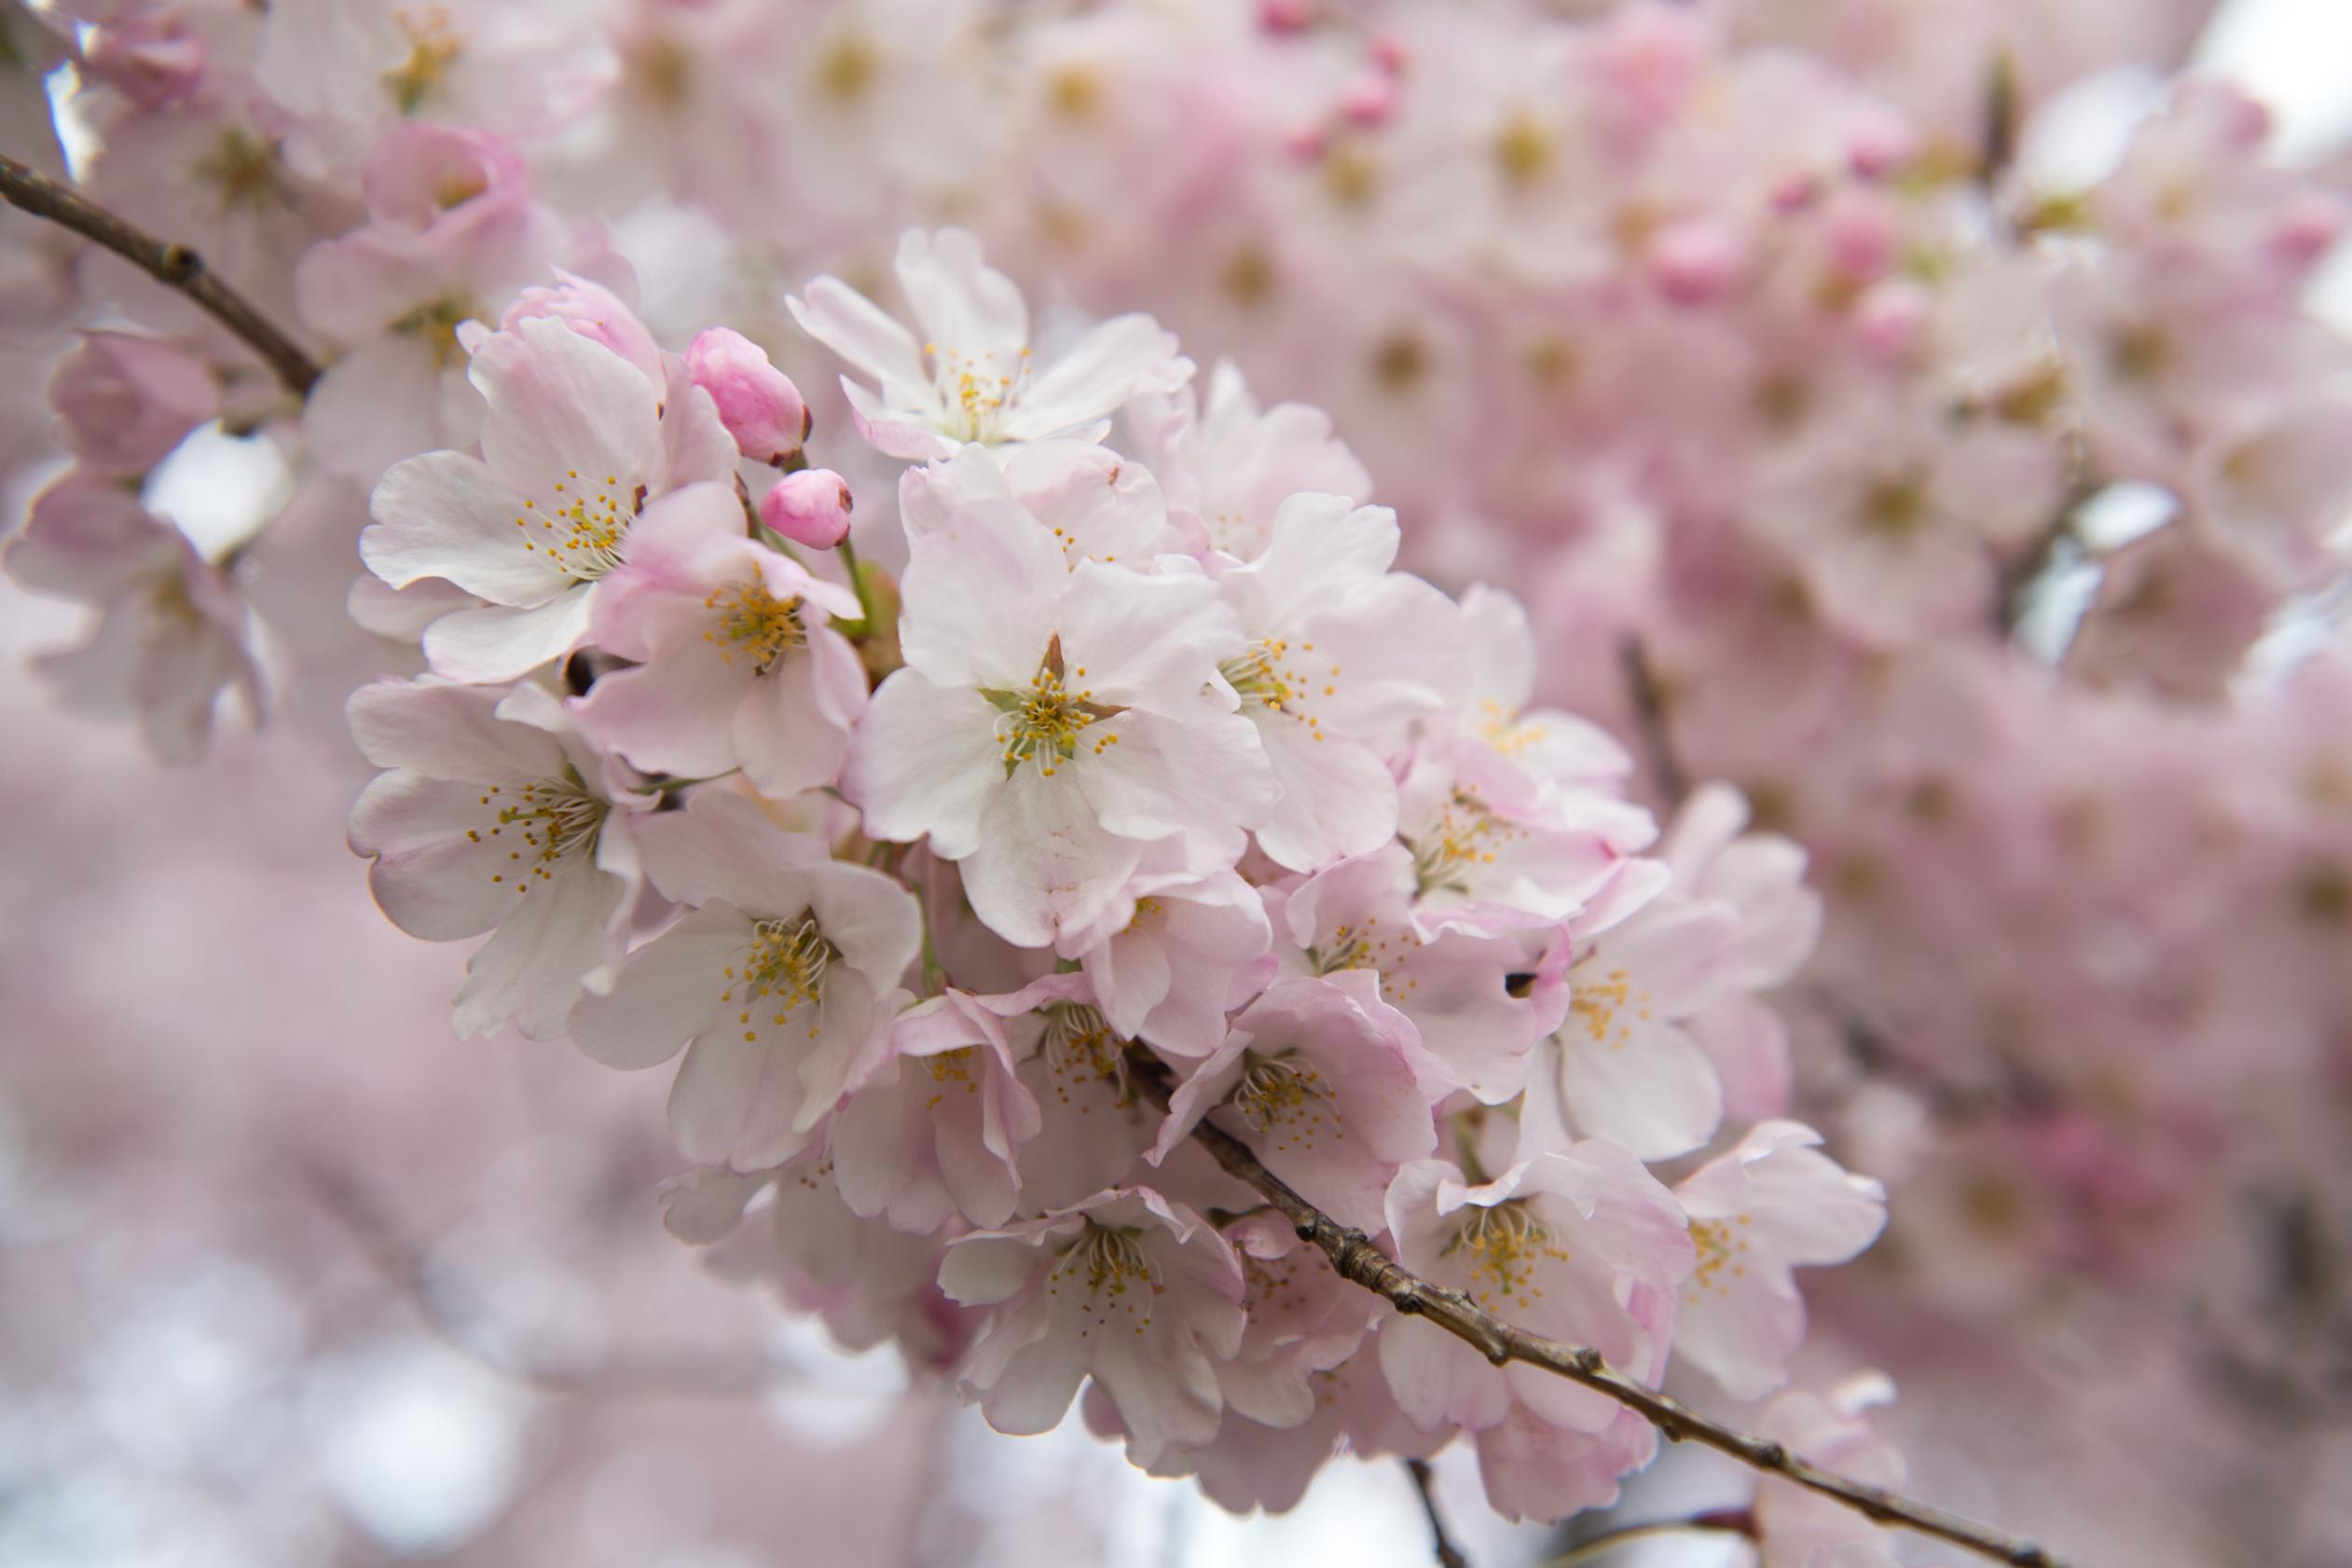 Cherry blossoms reach their peak in Washington, D.C. | CNN Travel